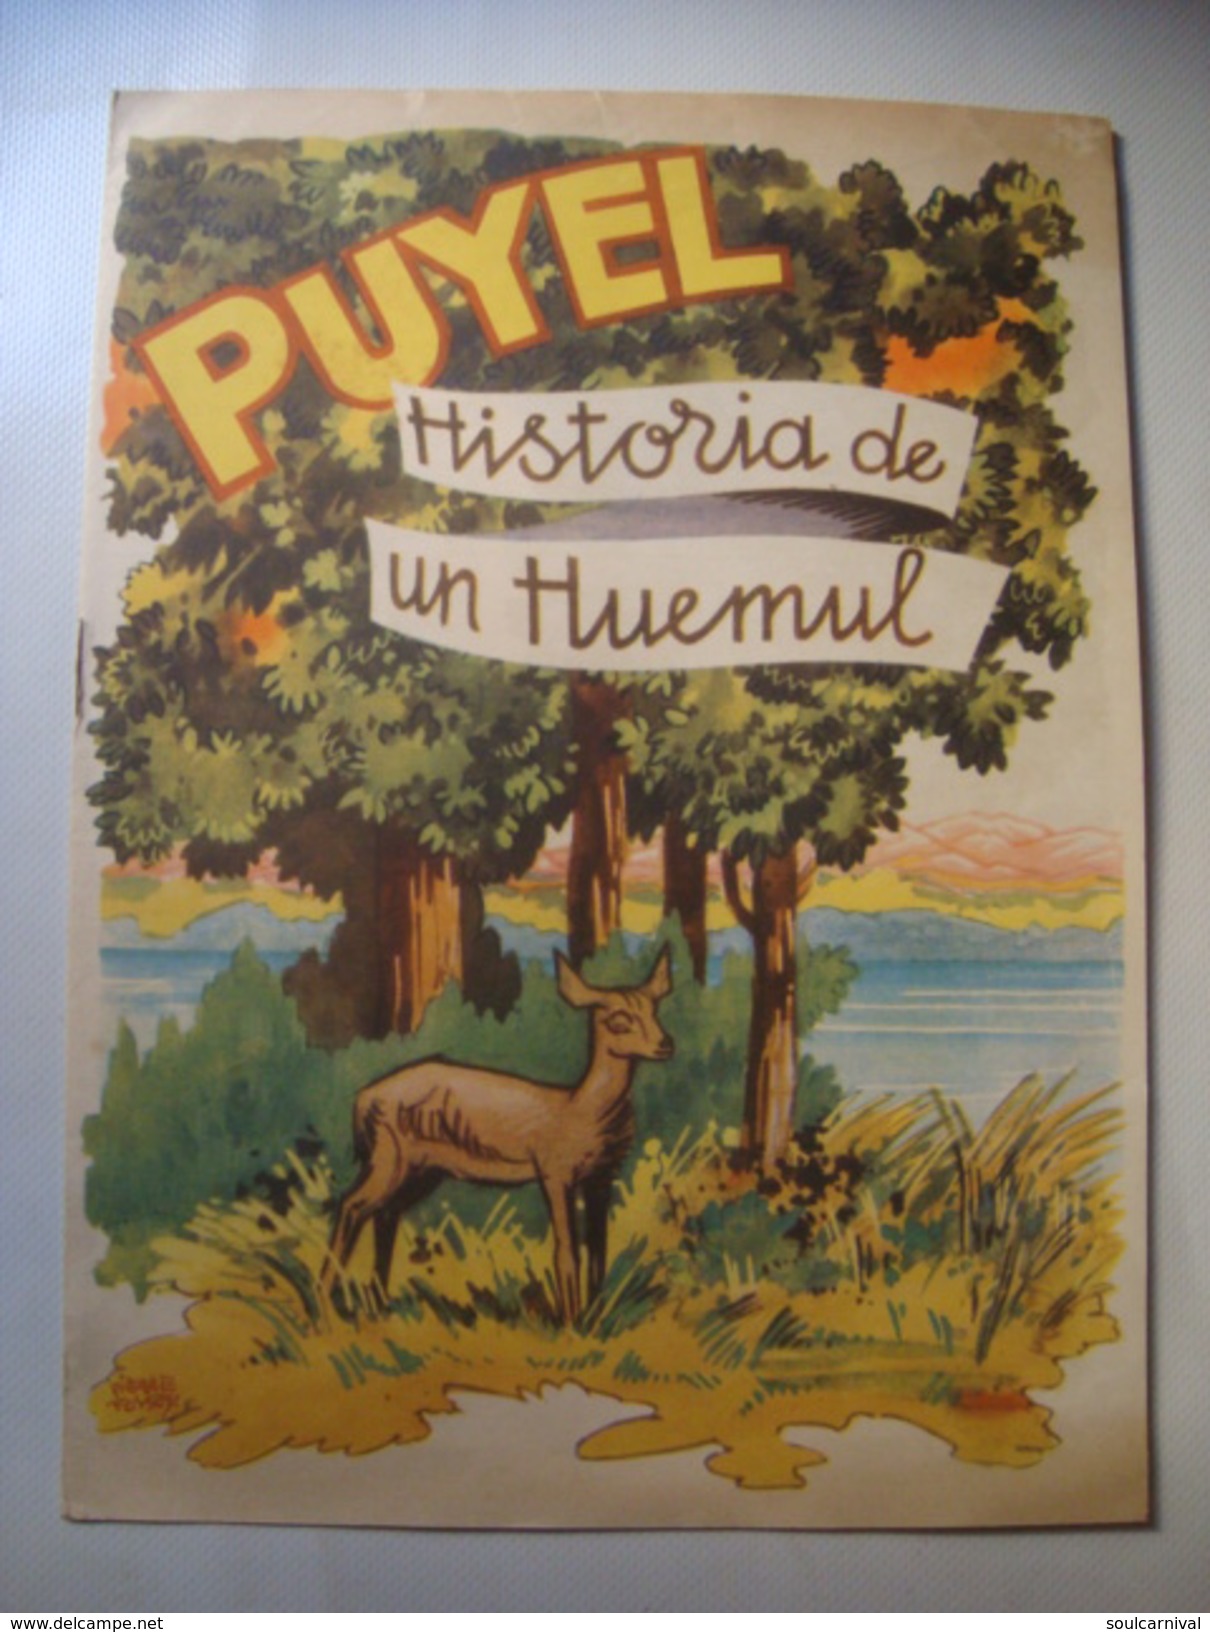 PUYEL. HISTORIA DE UN HUEMUL - ARGENTINA, DIRECCION DE TURISMO Y PARQUES, 1950 APROX. BY PIERRE FOSSEY. - Boeken Voor Jongeren